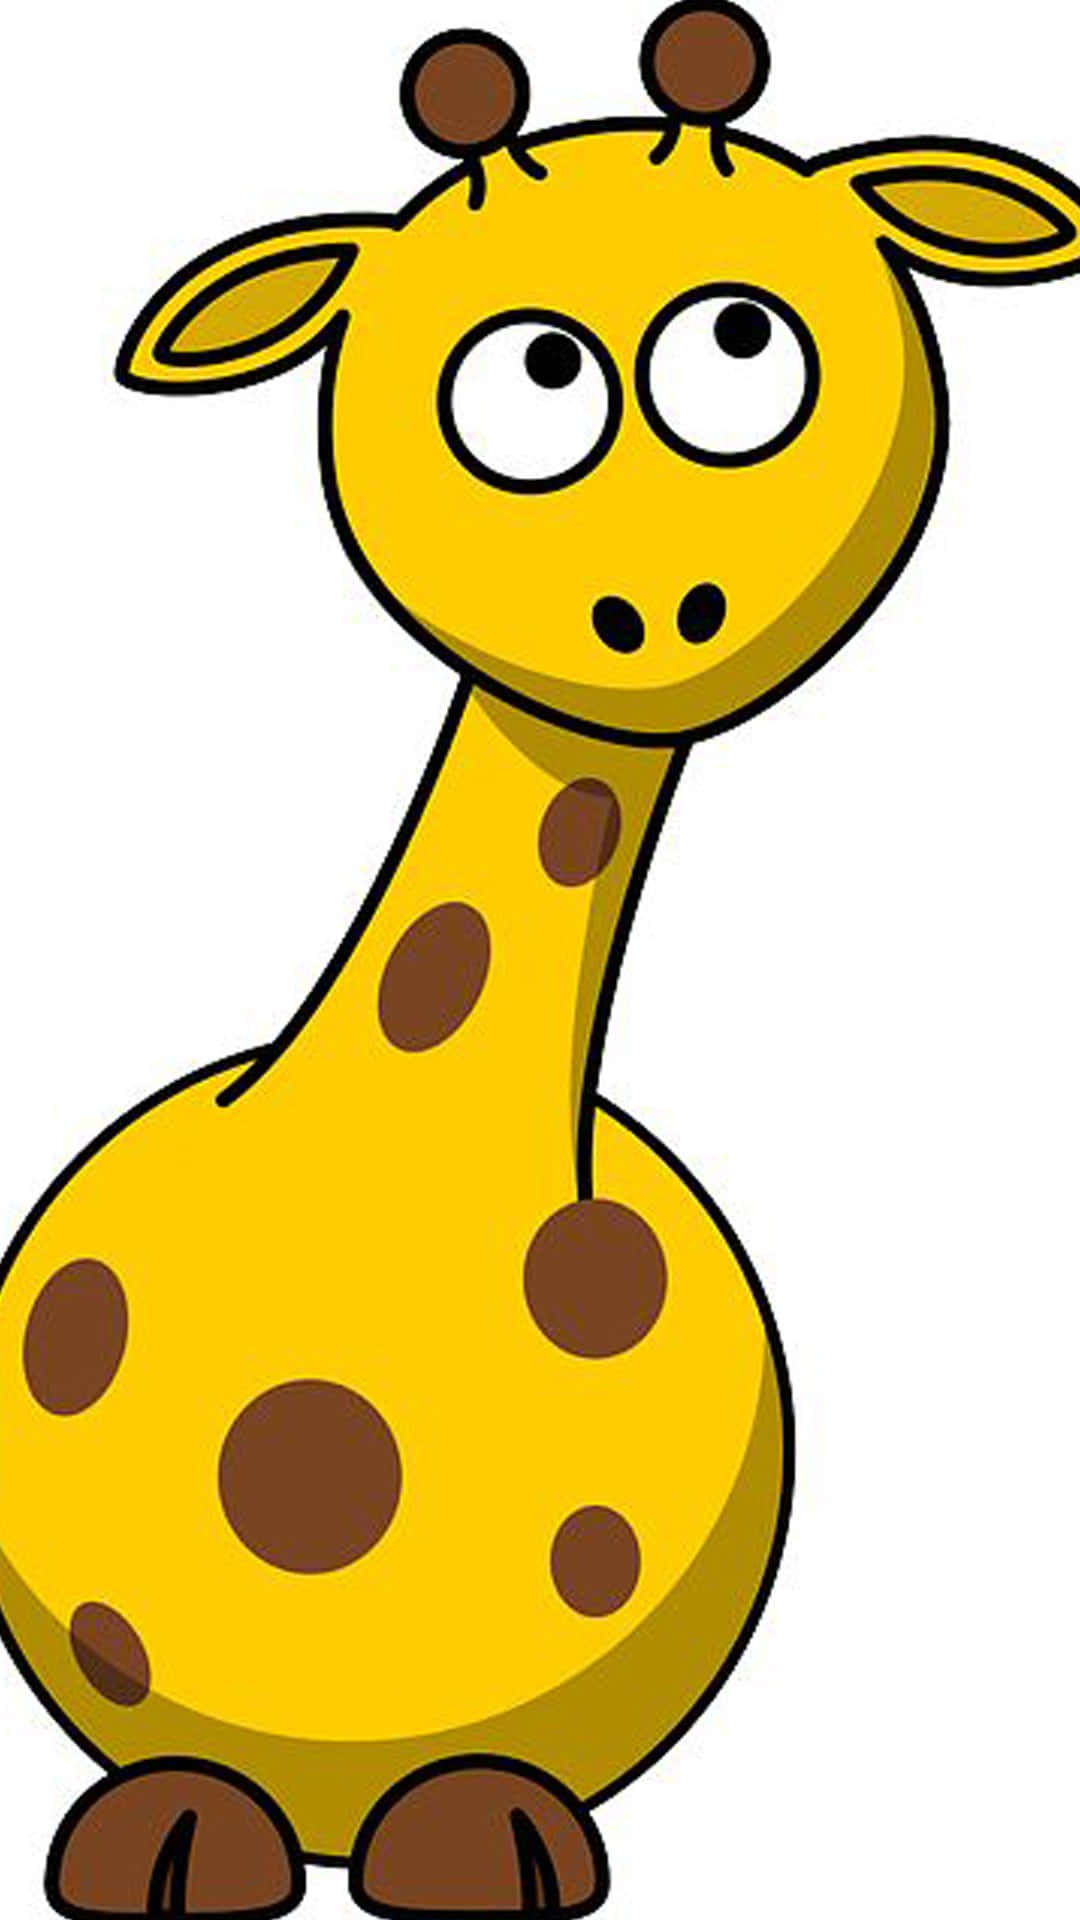 Einmoment Der Besinnung -- Baby Giraffe